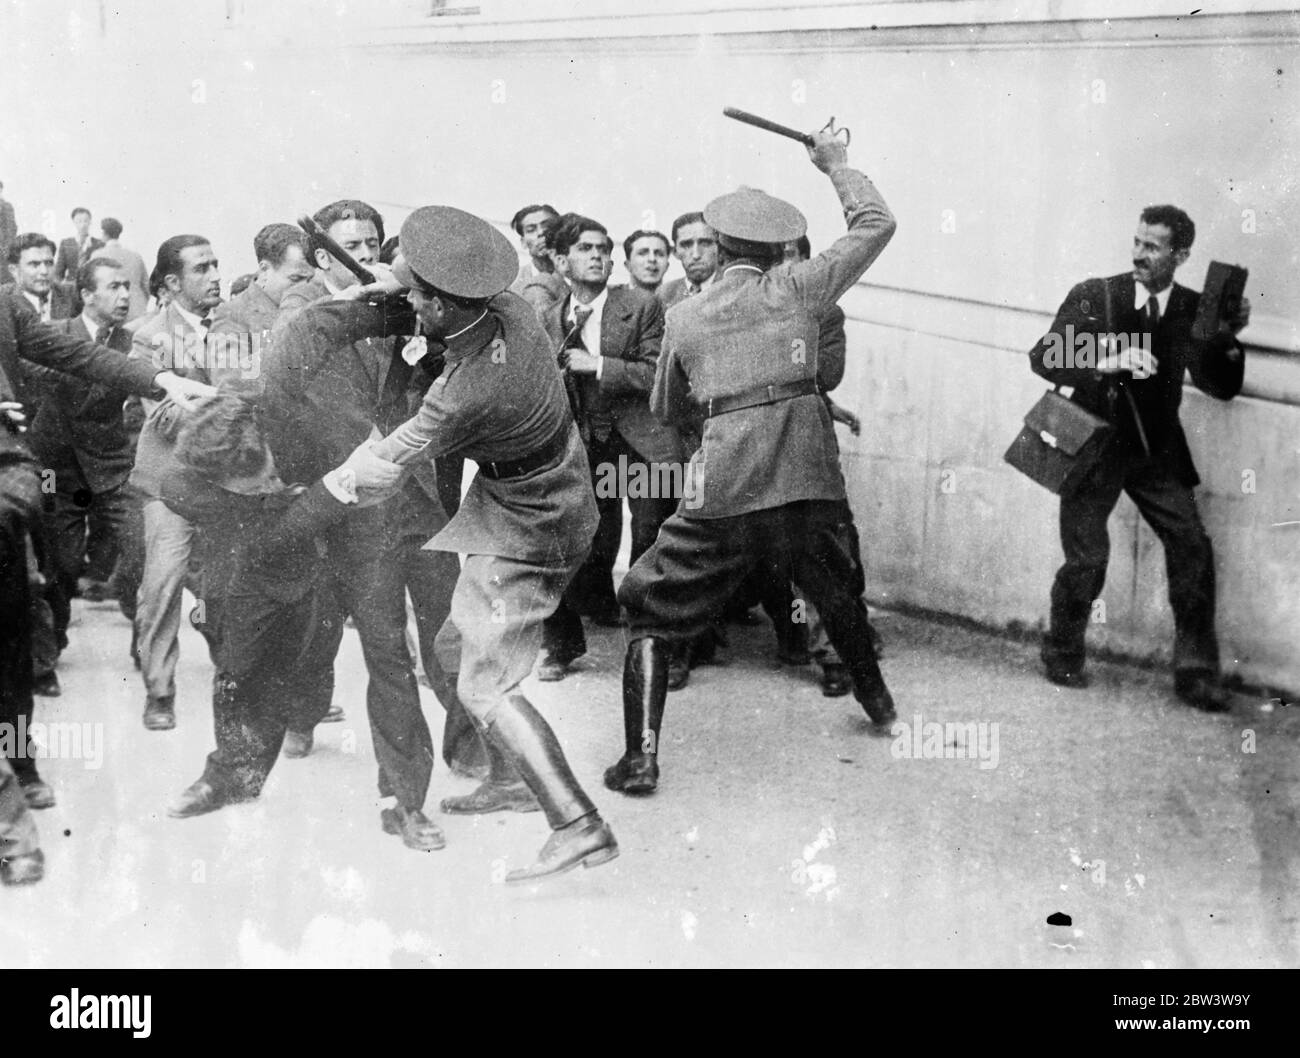 Polizei verwenden Knüppel in Athen Unruhen . Salonika-Probleme verbreiten sich auf das Kapital . Die Athener Polizei benutzt Knüppel im Kampf mit Demonstranten. 15 Mai 1936 Stockfoto